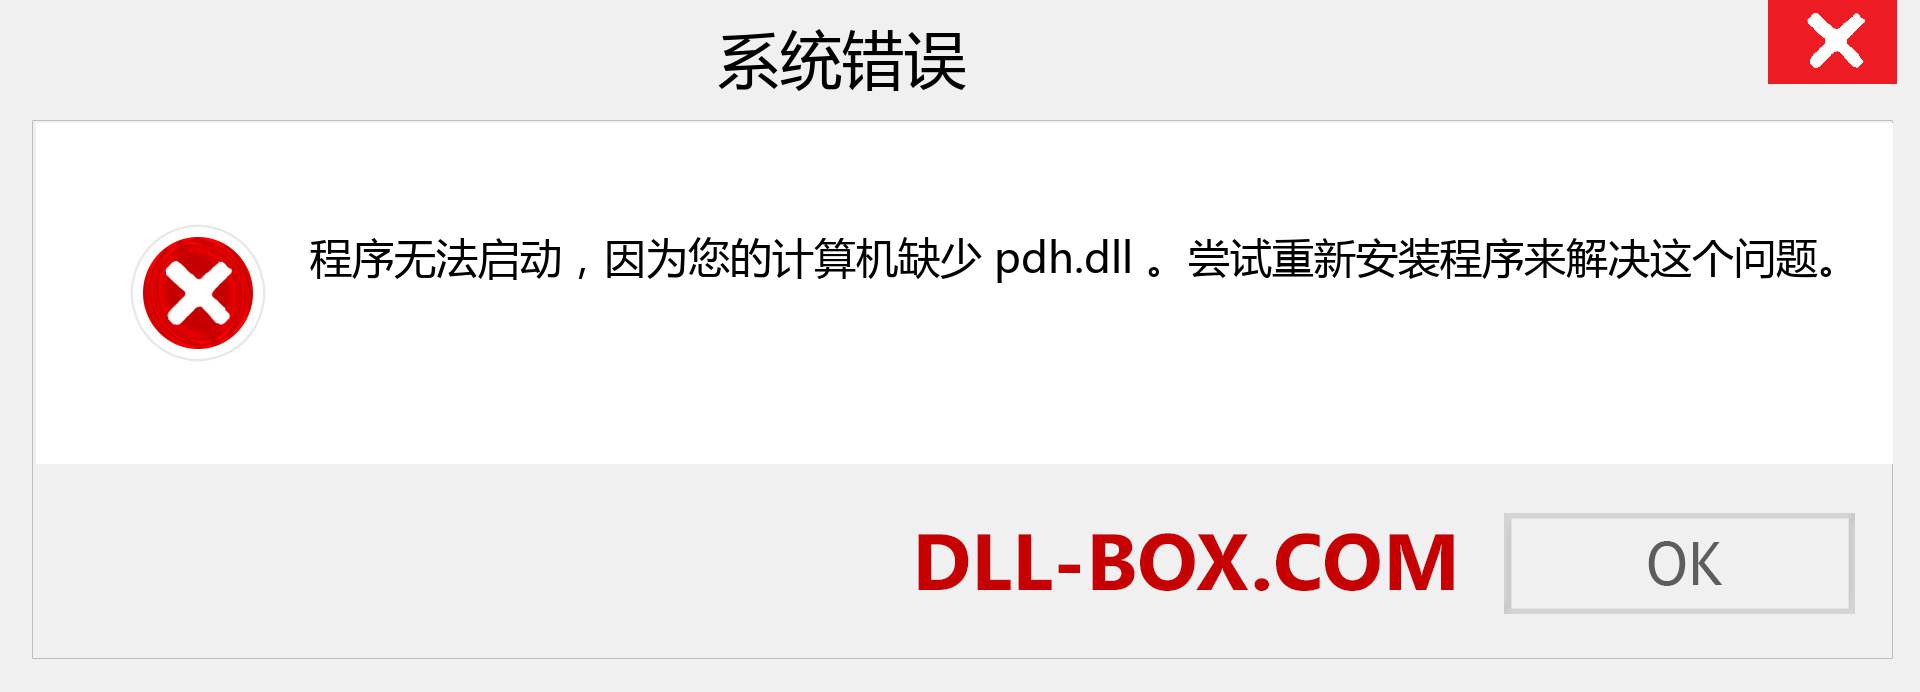 pdh.dll 文件丢失？。 适用于 Windows 7、8、10 的下载 - 修复 Windows、照片、图像上的 pdh dll 丢失错误